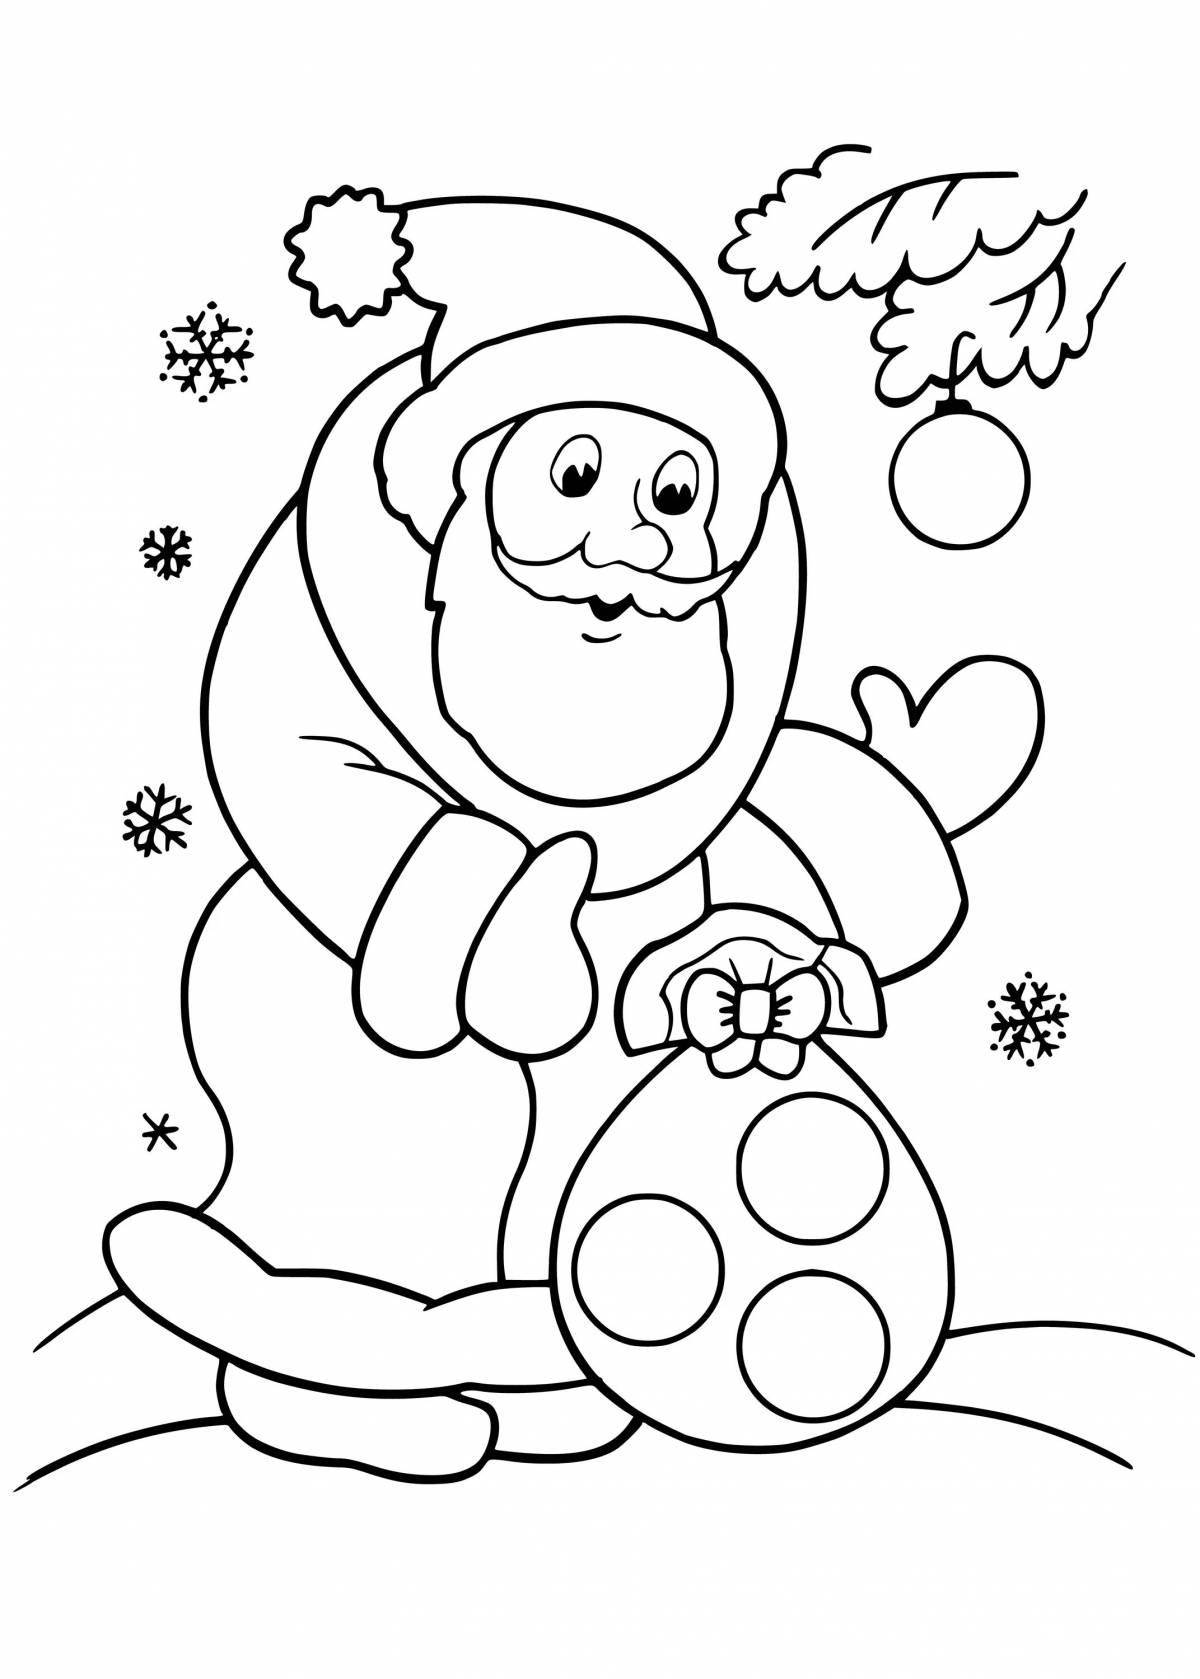 Joyful santa claus coloring book for kids